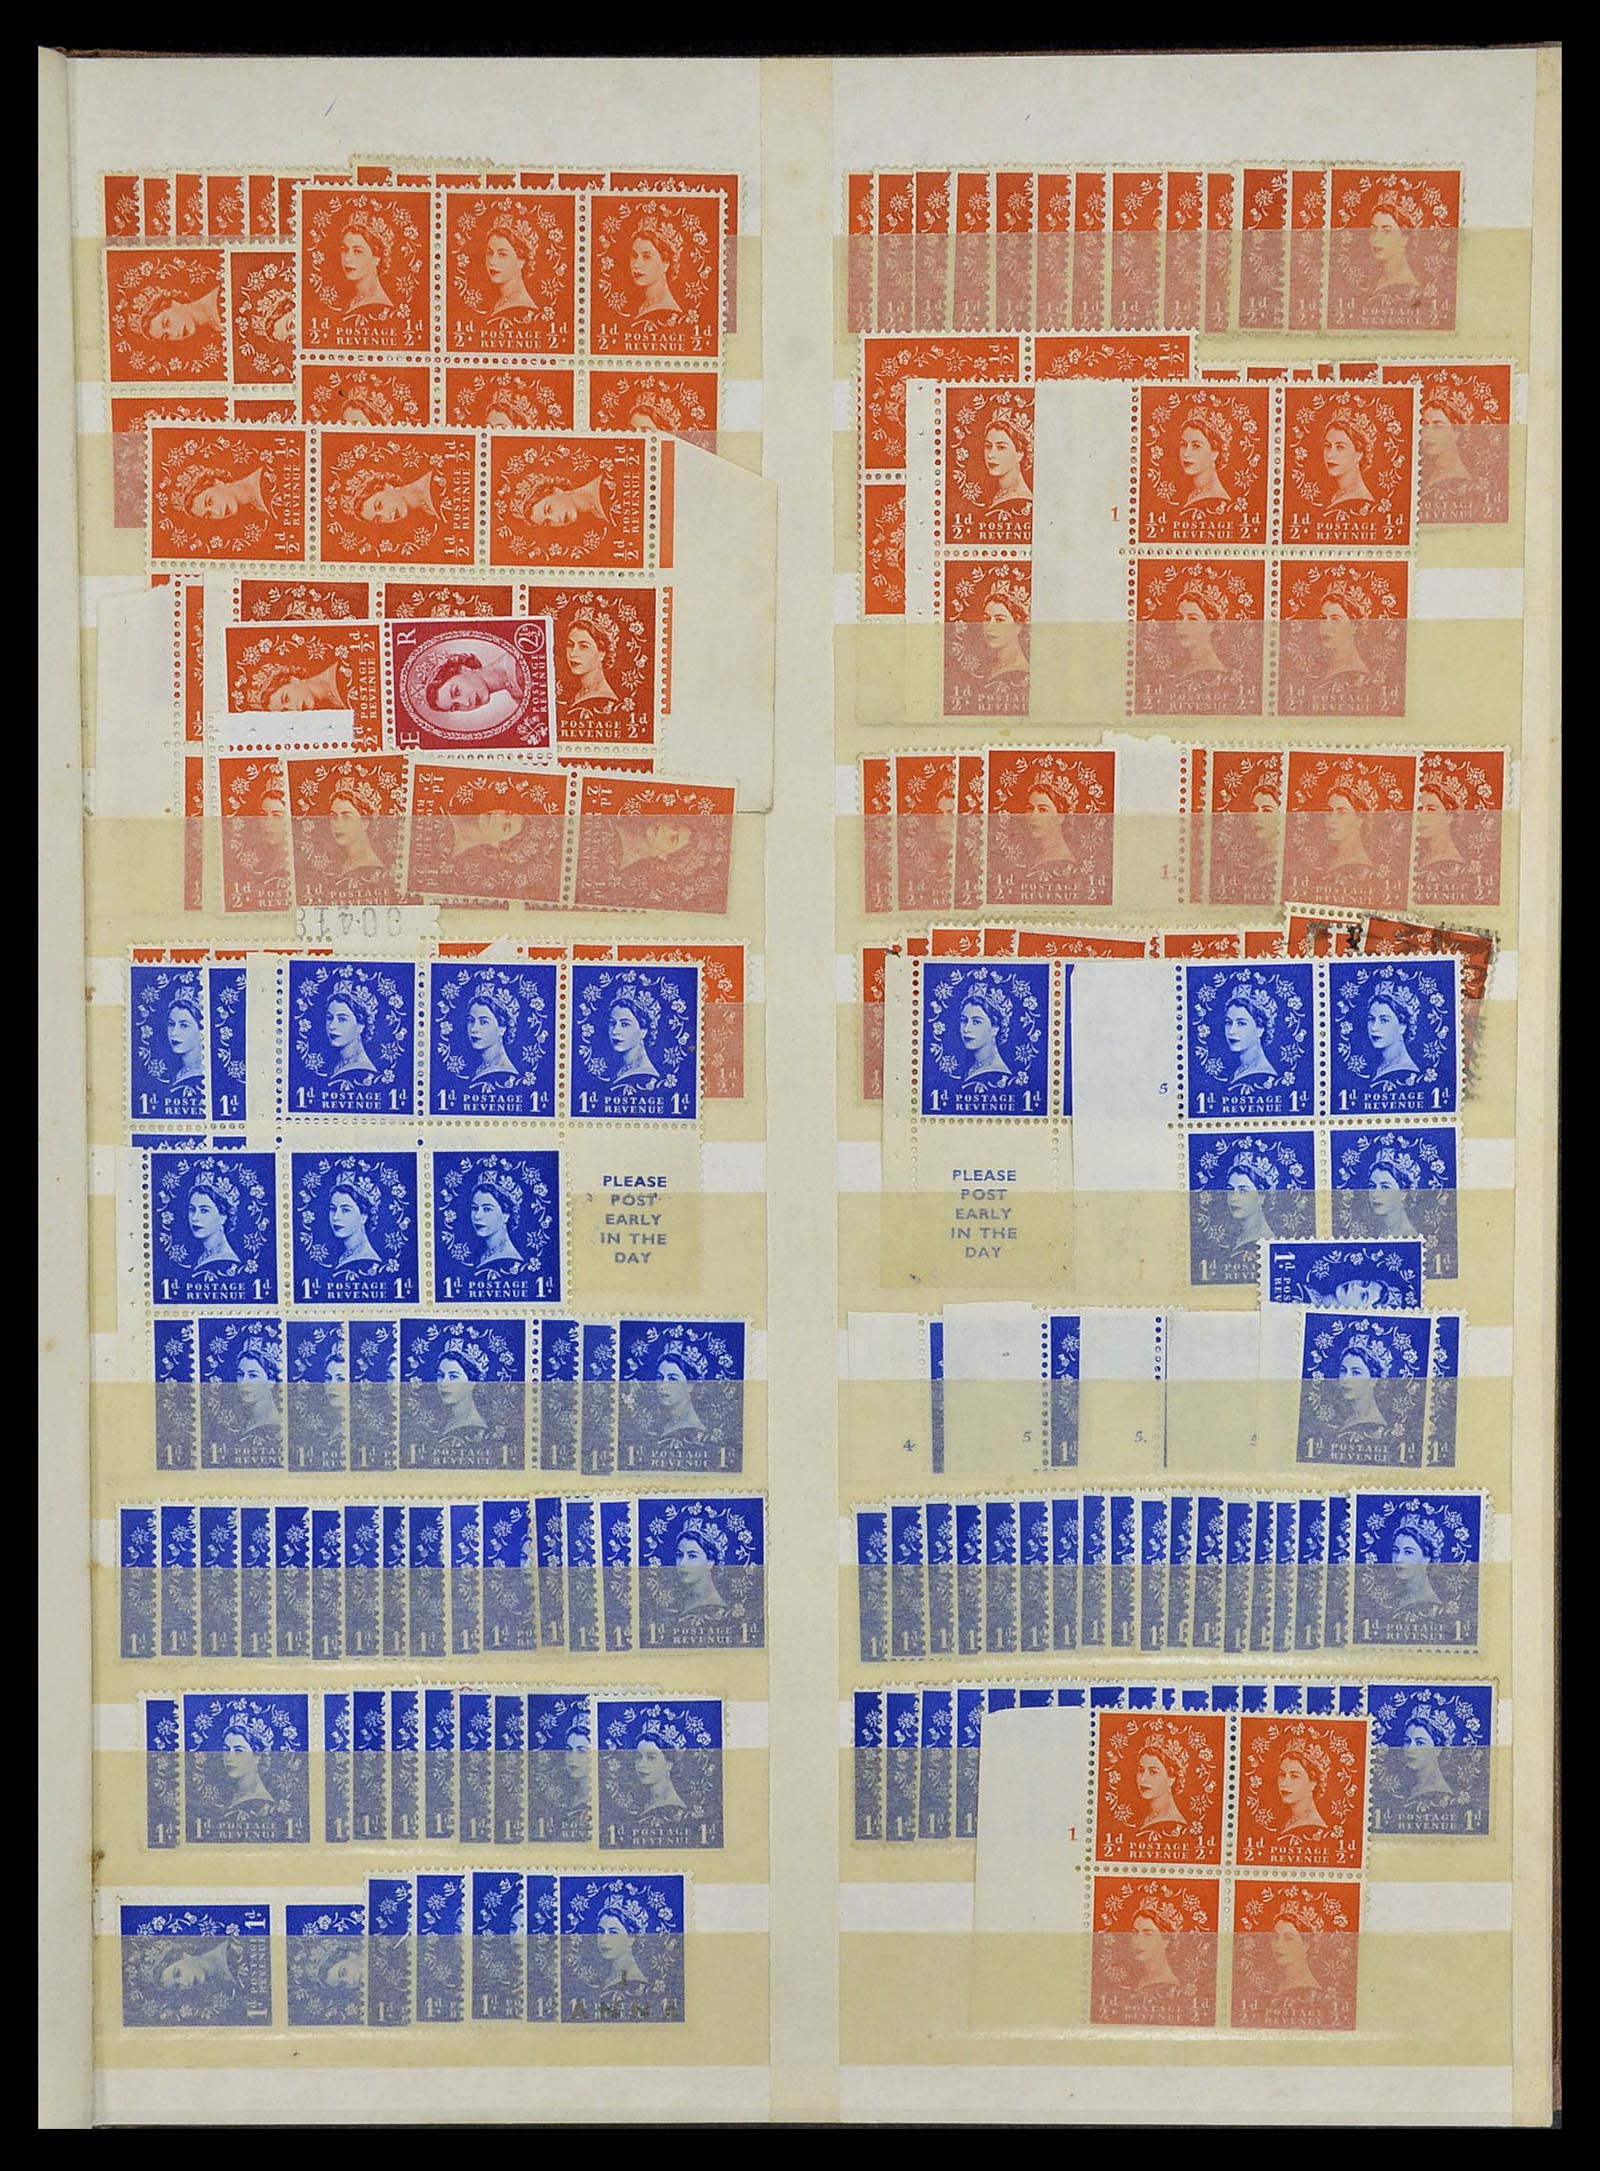 34368 072 - Postzegelverzameling 34368 Engeland uitzoekpartij 1858-1990.